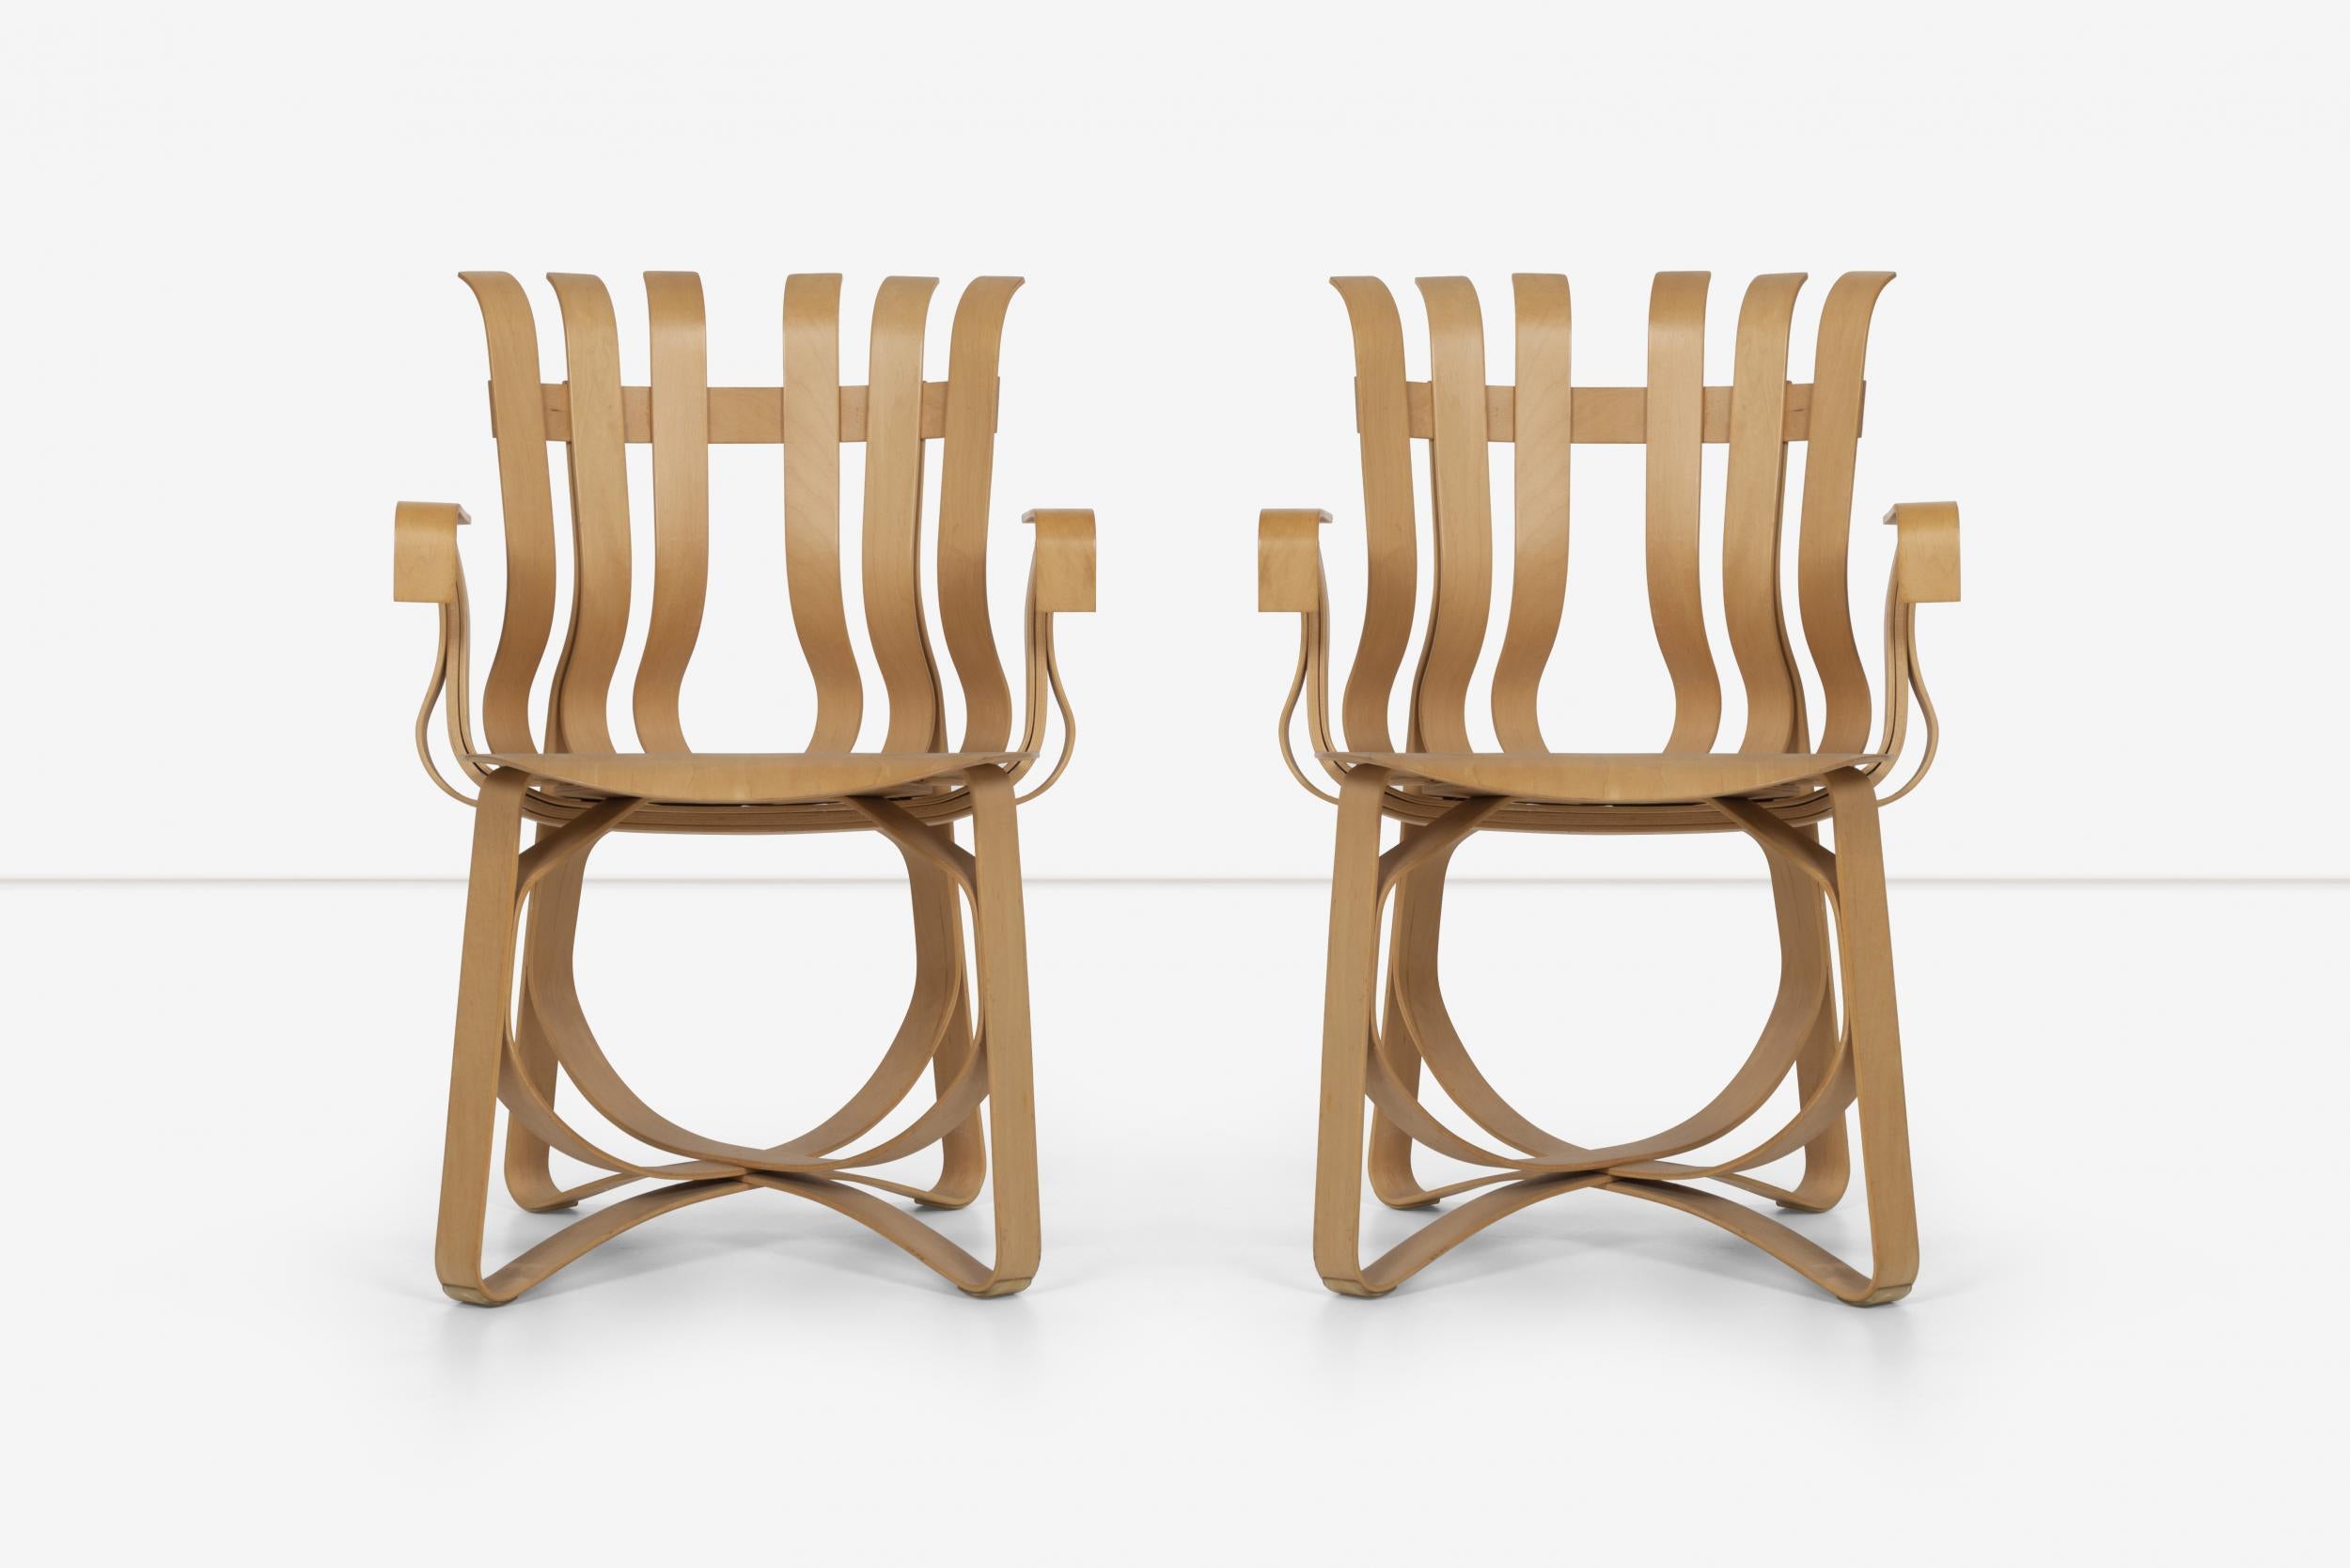 Die Hattrick-Sessel von Frank Ghery für Knoll, Bugholzmöbel, die vom einfachen Scheffelkorb inspiriert sind.
Zitate von Gehry: 